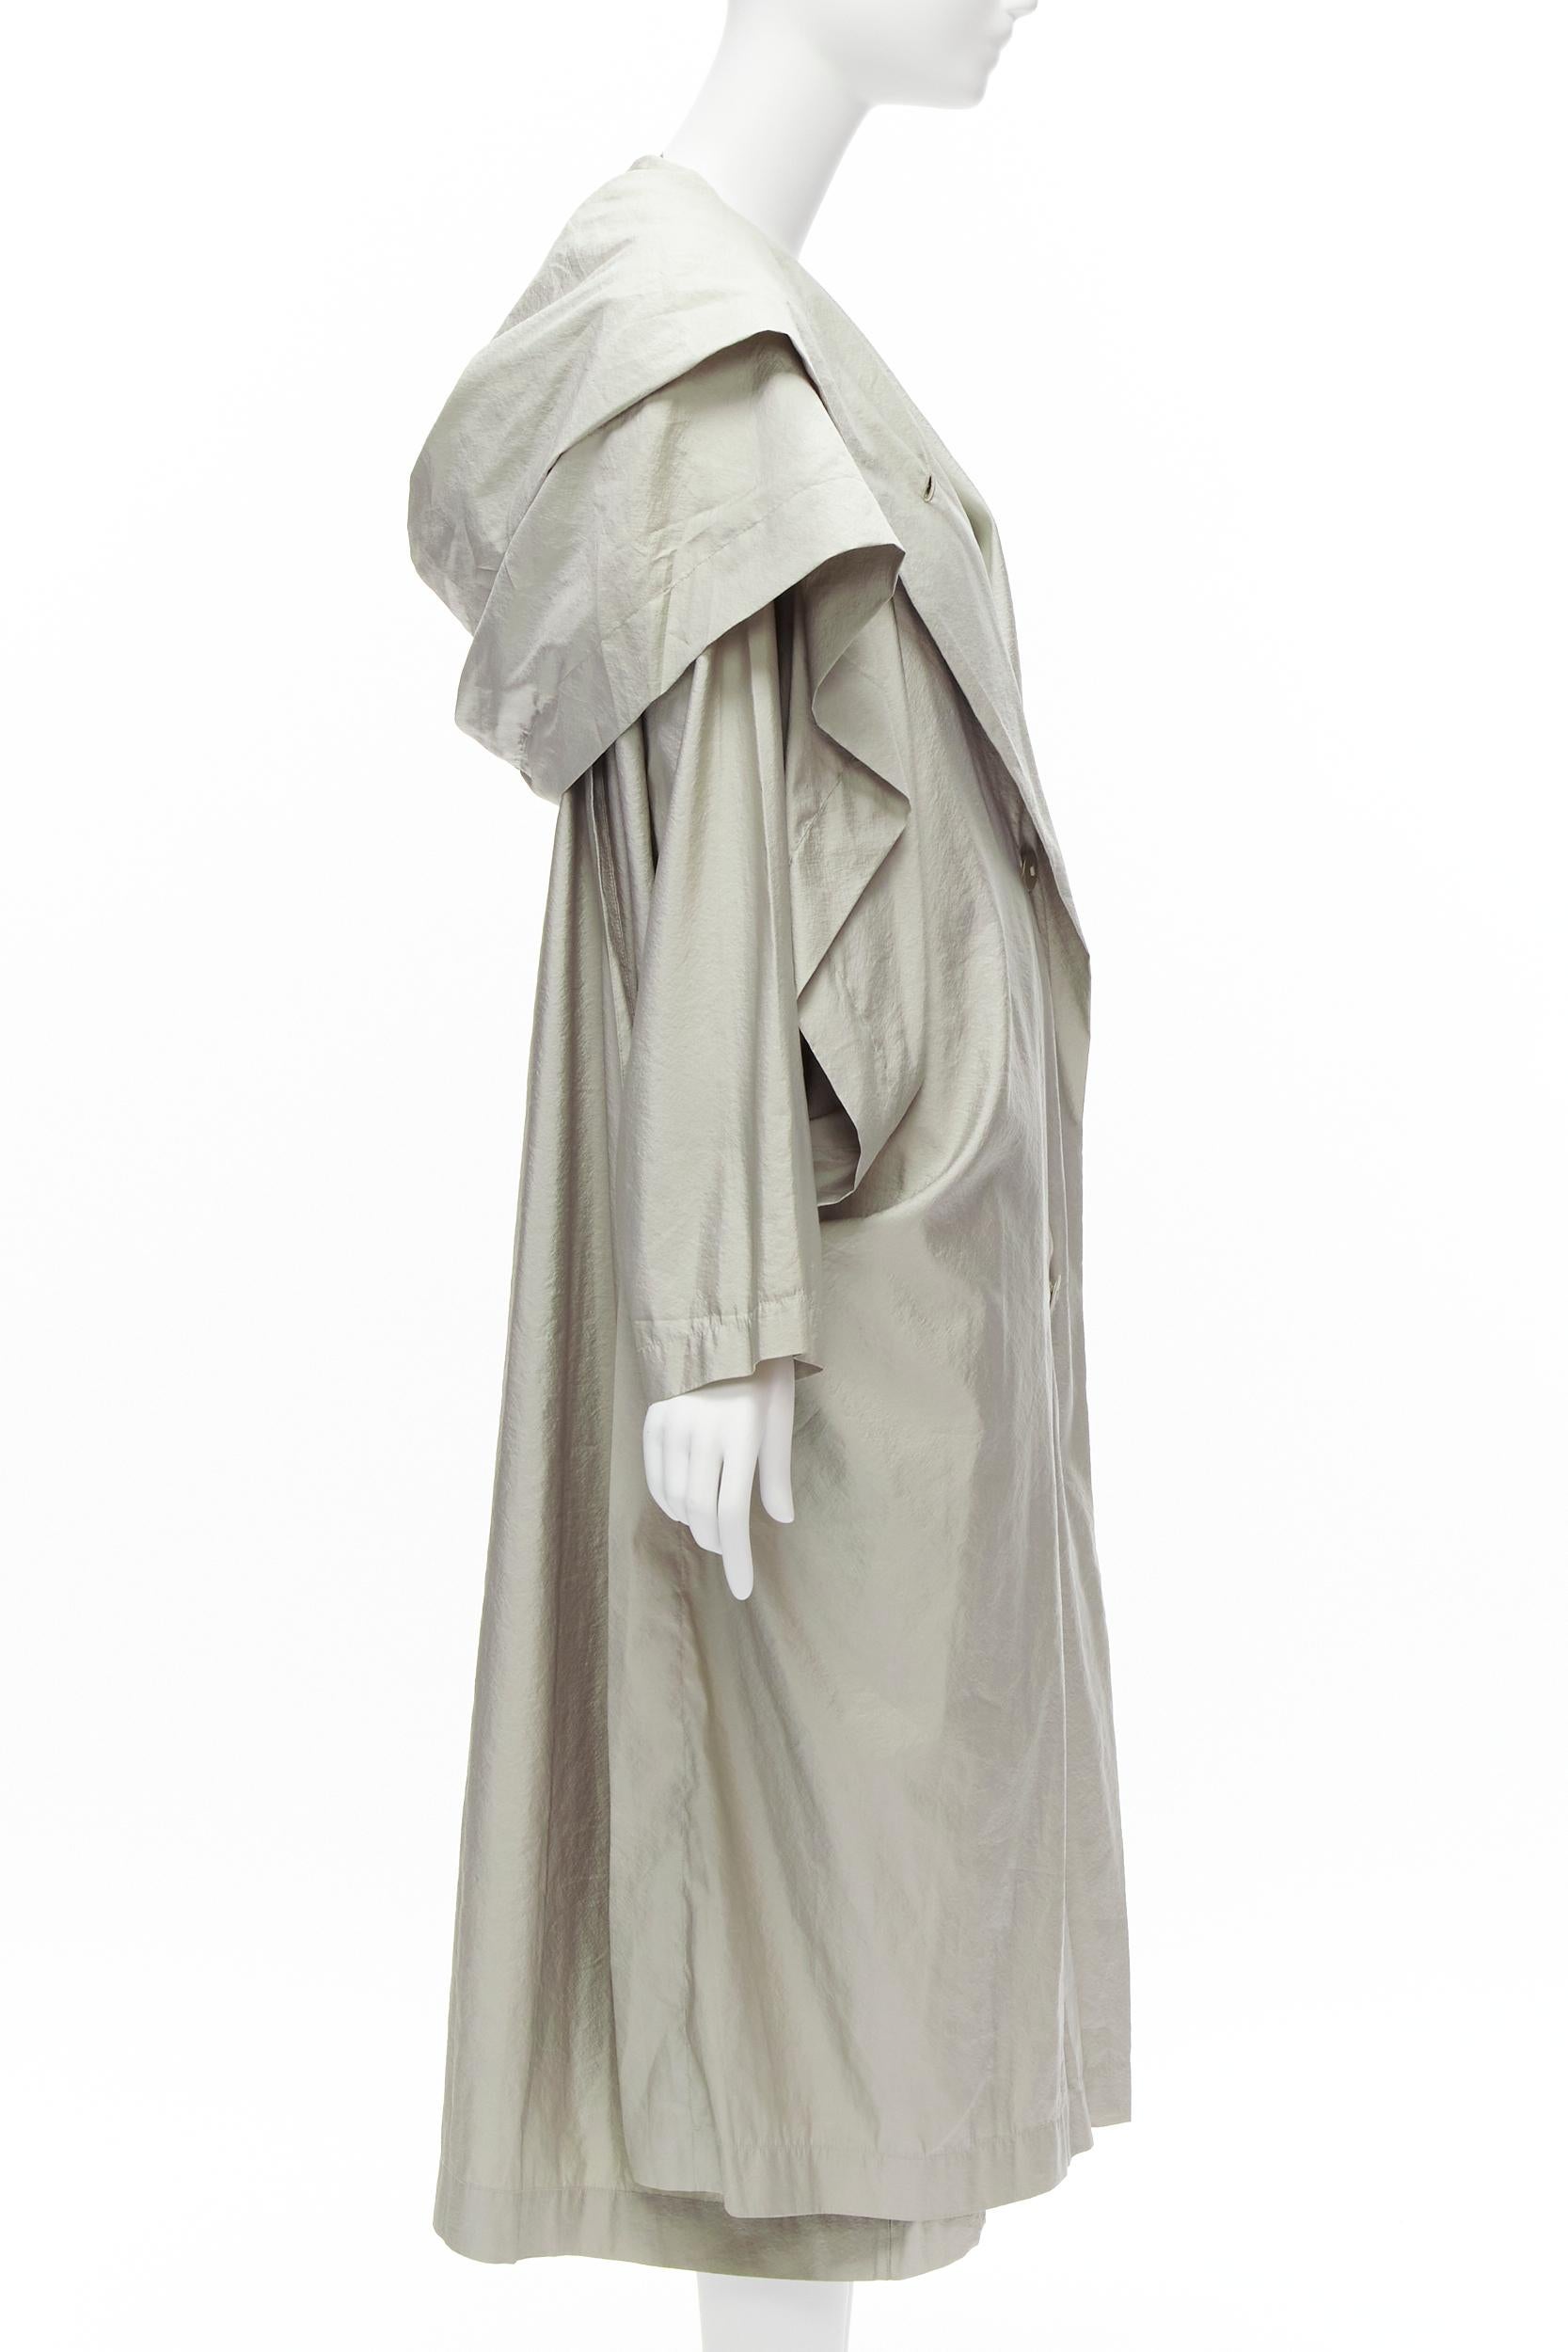 ISSEY MIYAKE 1986 Vintage Runway lucid hooded sleeve layer draped overcoat JP9 M For Sale 1